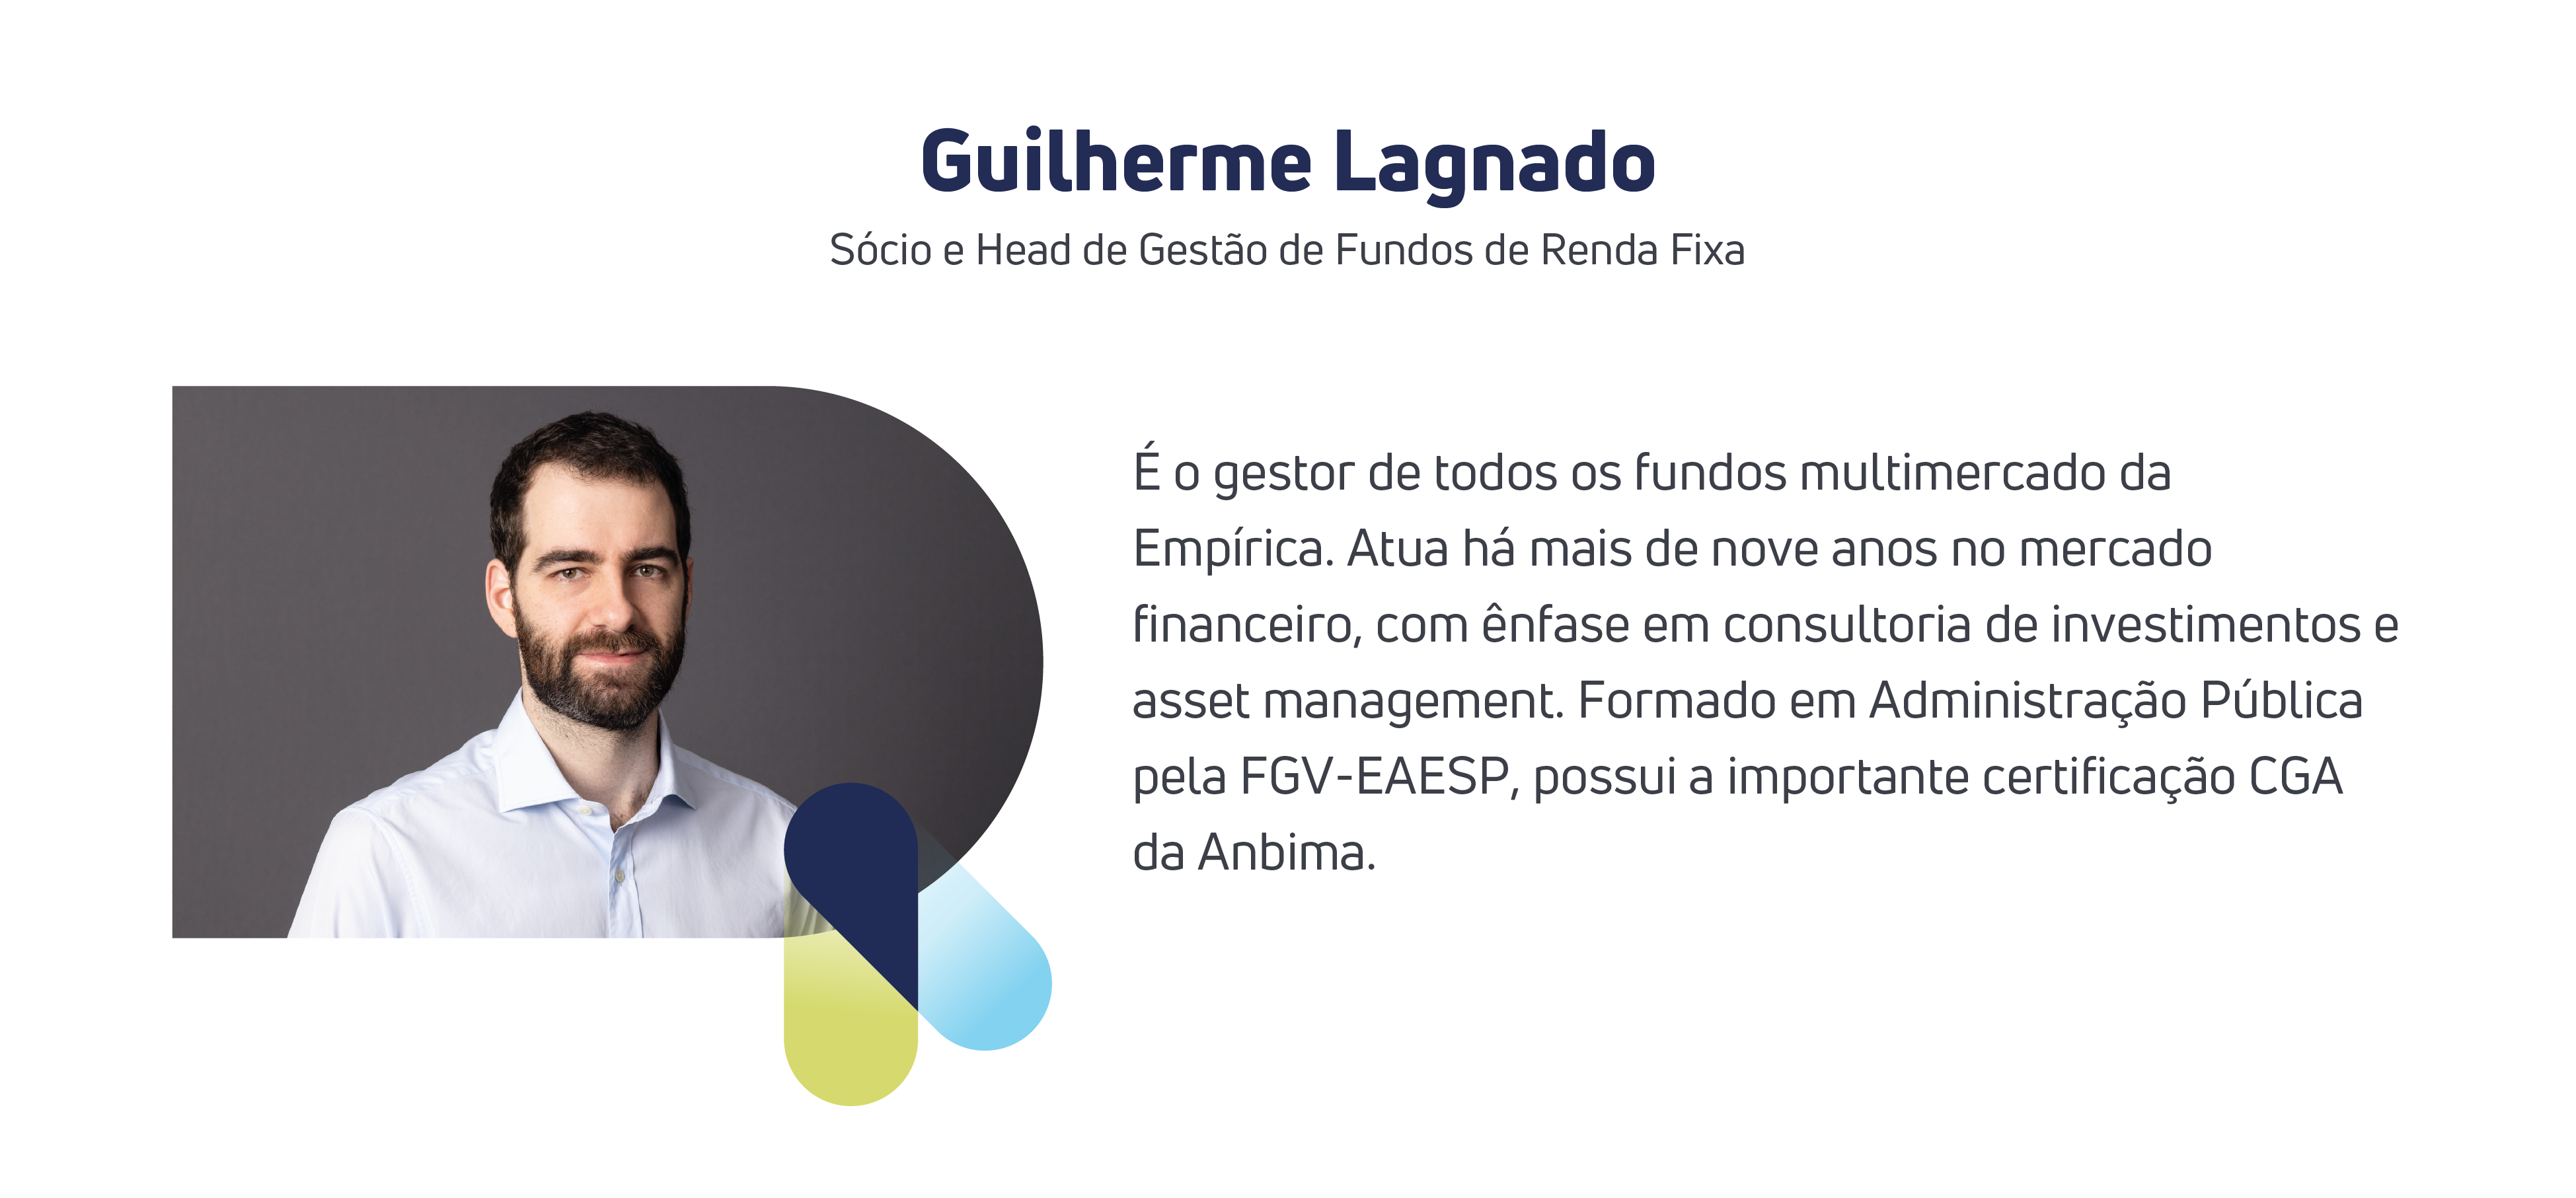 Guilherme Lagnado, Sócio e Head de Gestão de Fundos de Renda Fixa da Empírica